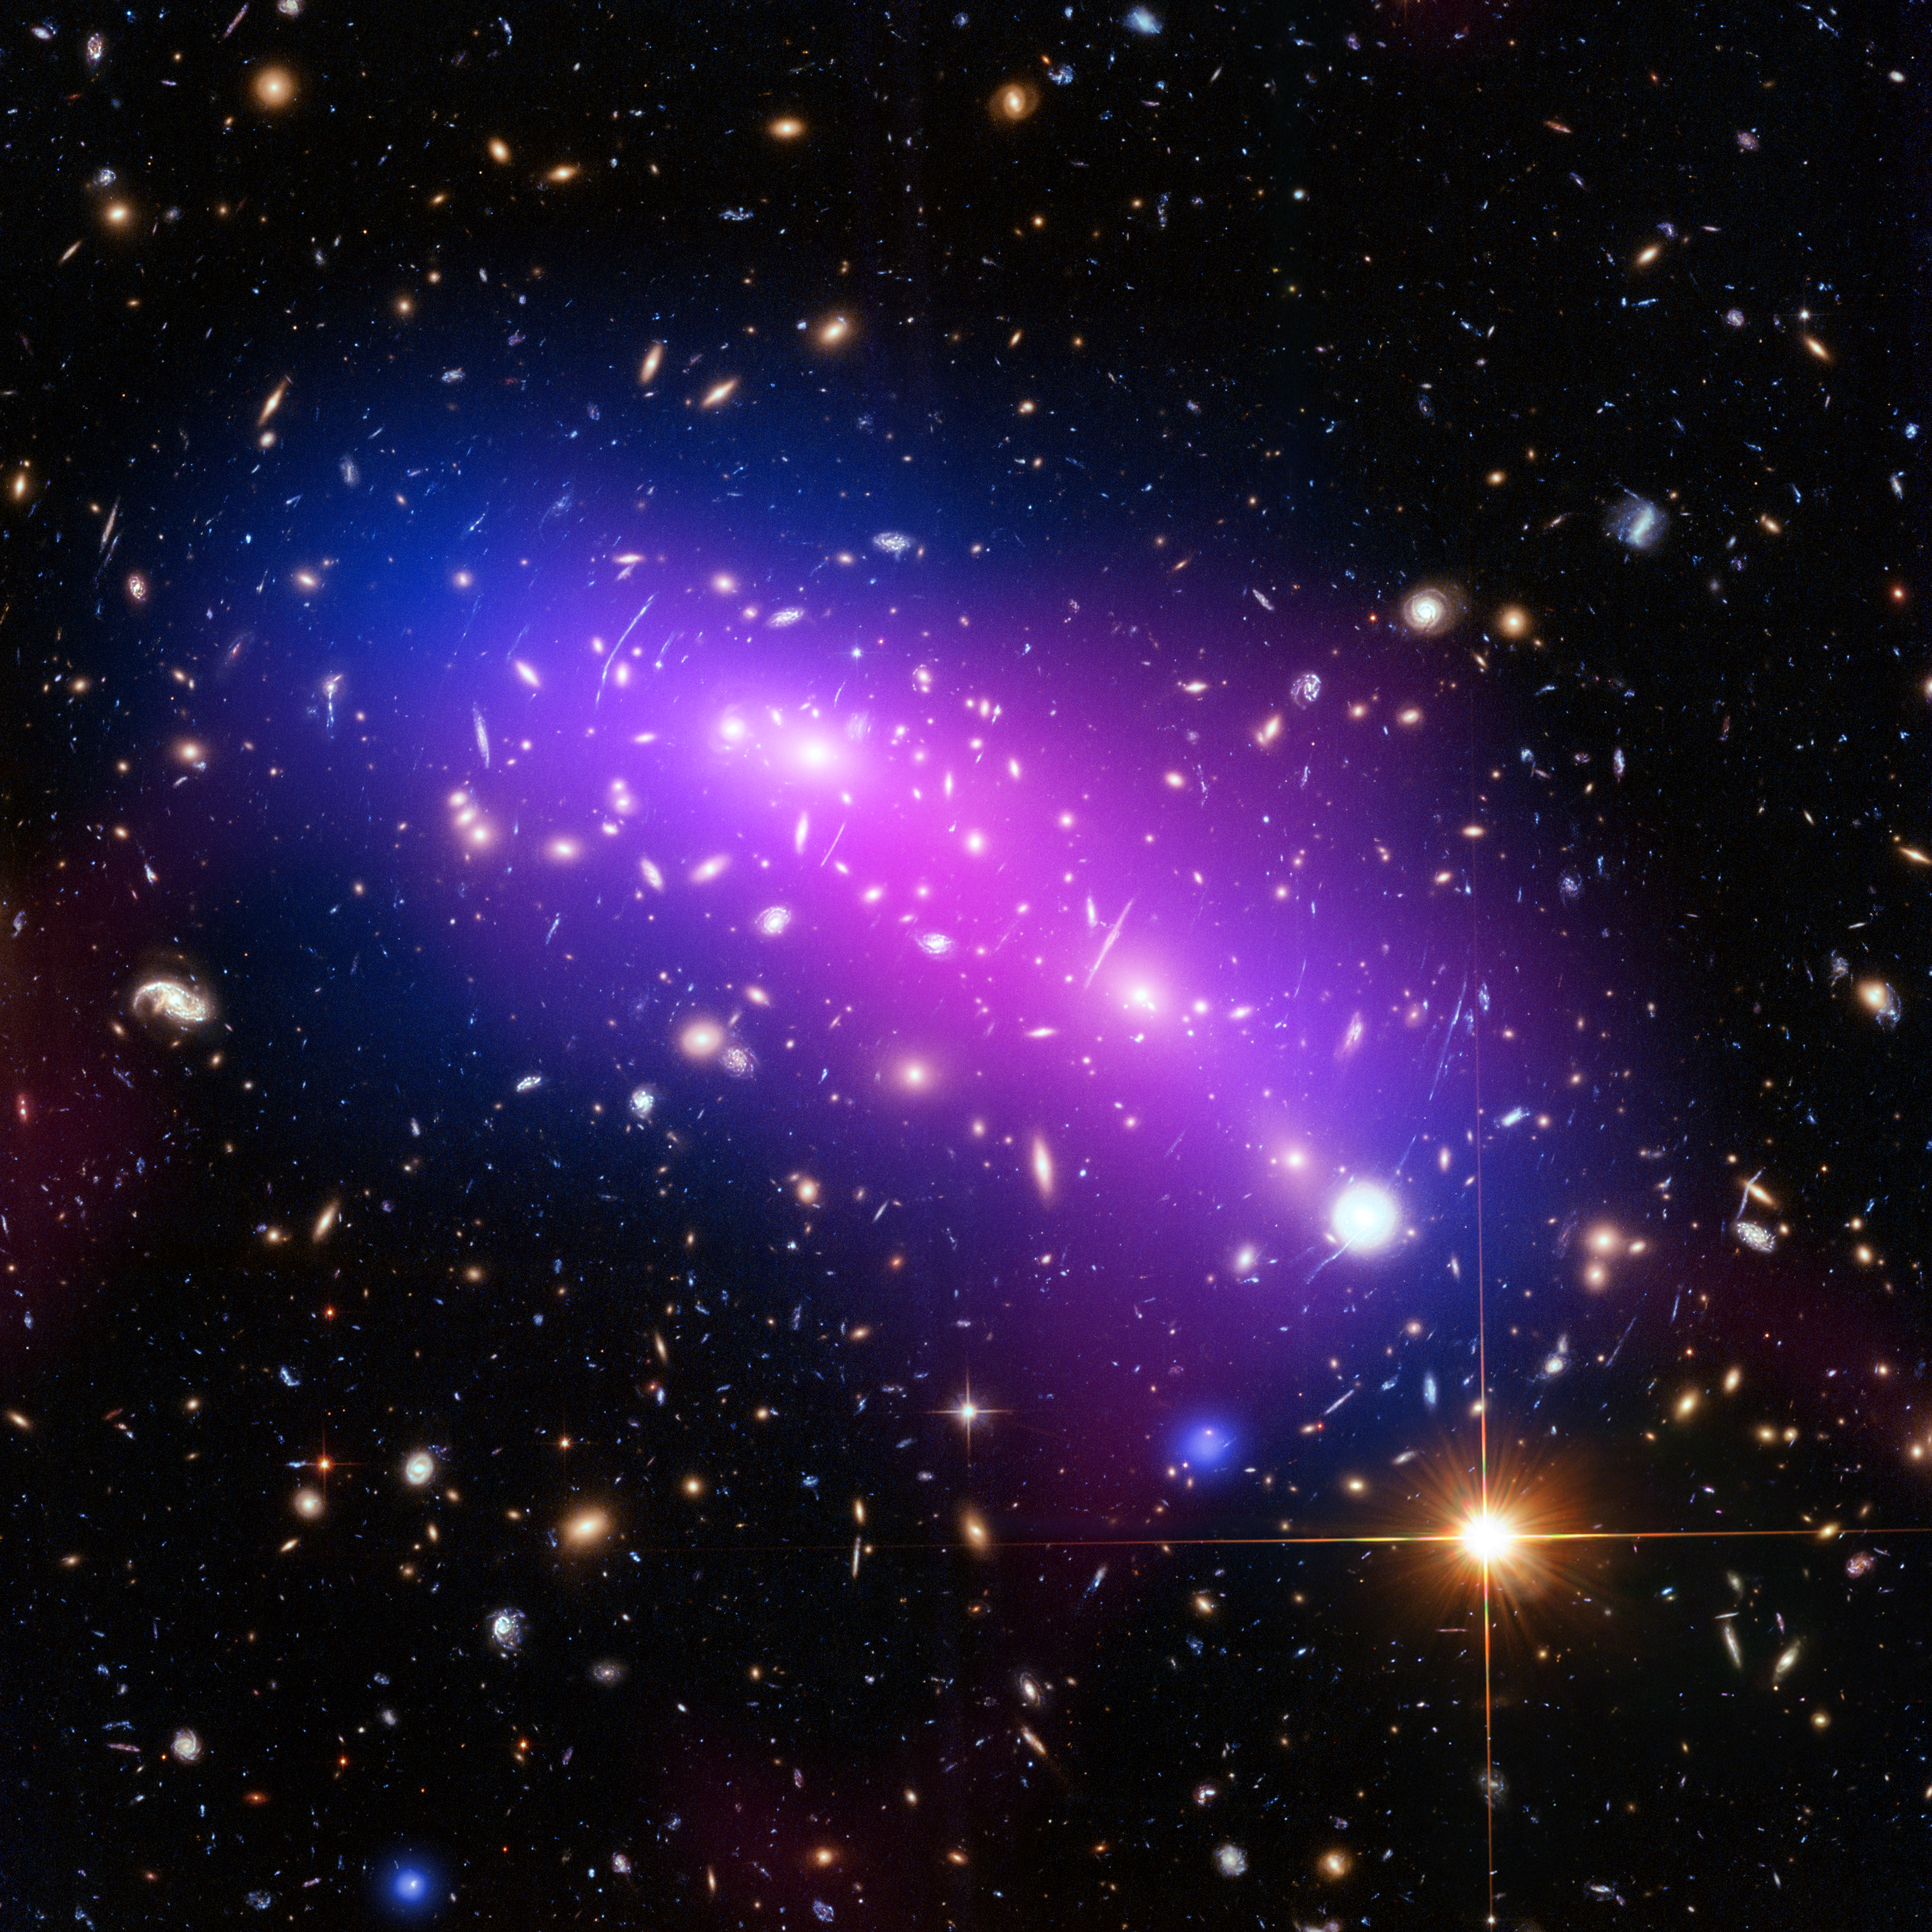 Frontier Fields galaxy cluster MACS J0416